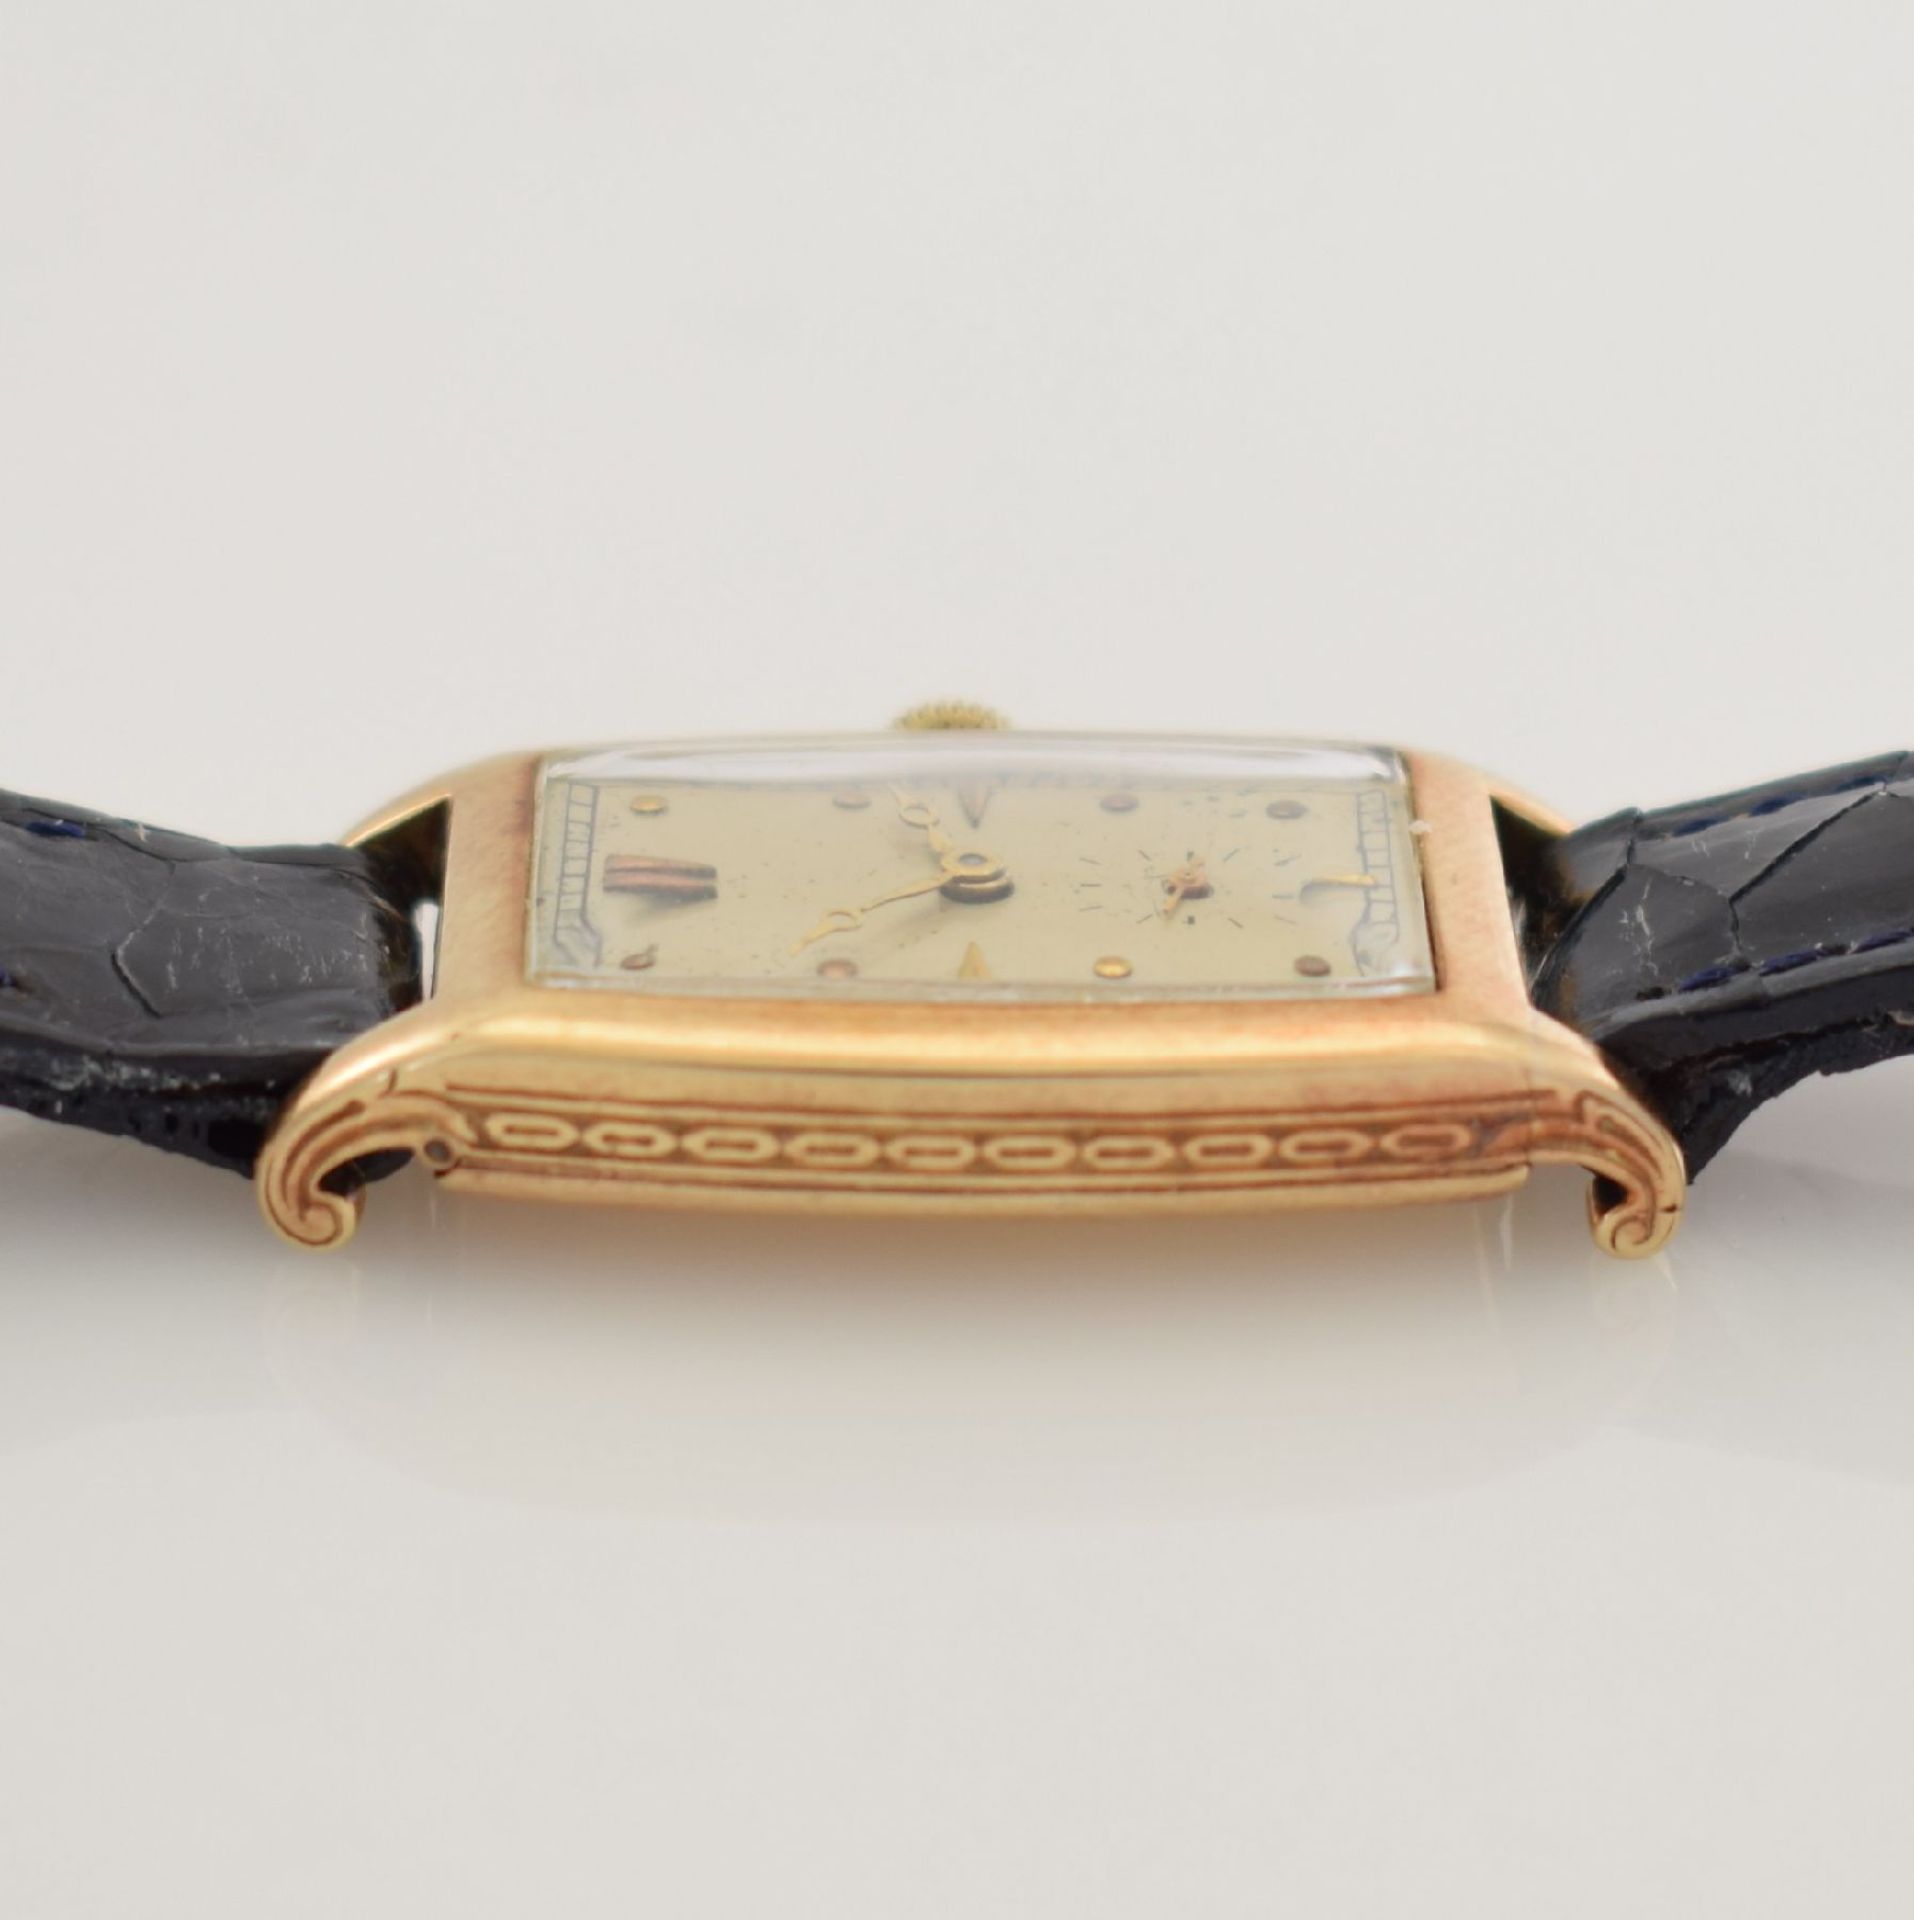 IWC seltene tonneau-förmige Armbanduhr in GG 585/000, Schweiz um 1924, Scharniergeh. m. seitl. - Bild 8 aus 11